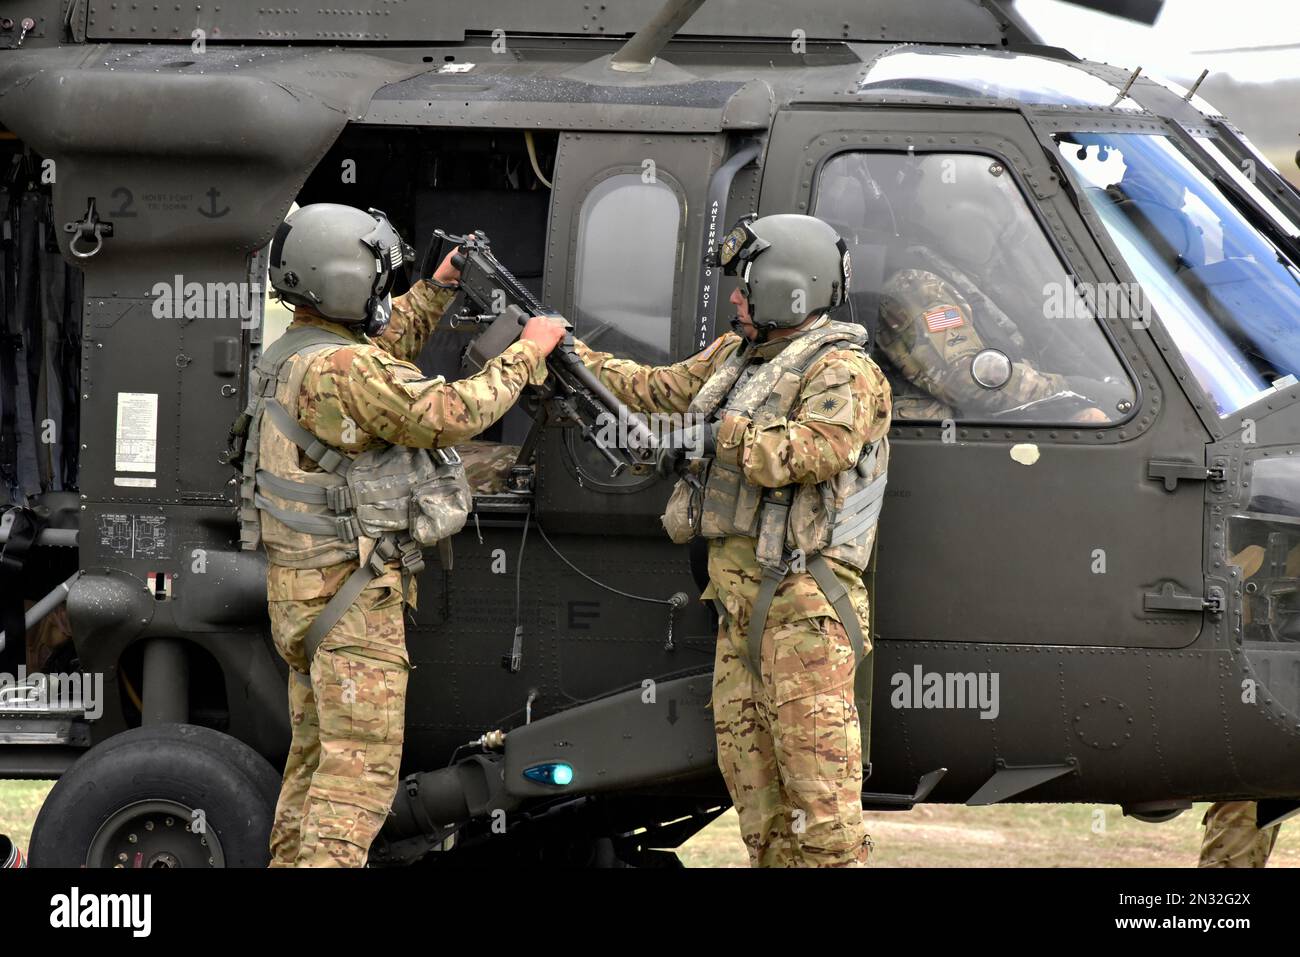 Six UH-60 soldats de la Réserve de l'Armée des faucons noirs ont tiré des milliers de munitions de M240 pendant l'entraînement, fort Hunter Liggett, Californie. Banque D'Images